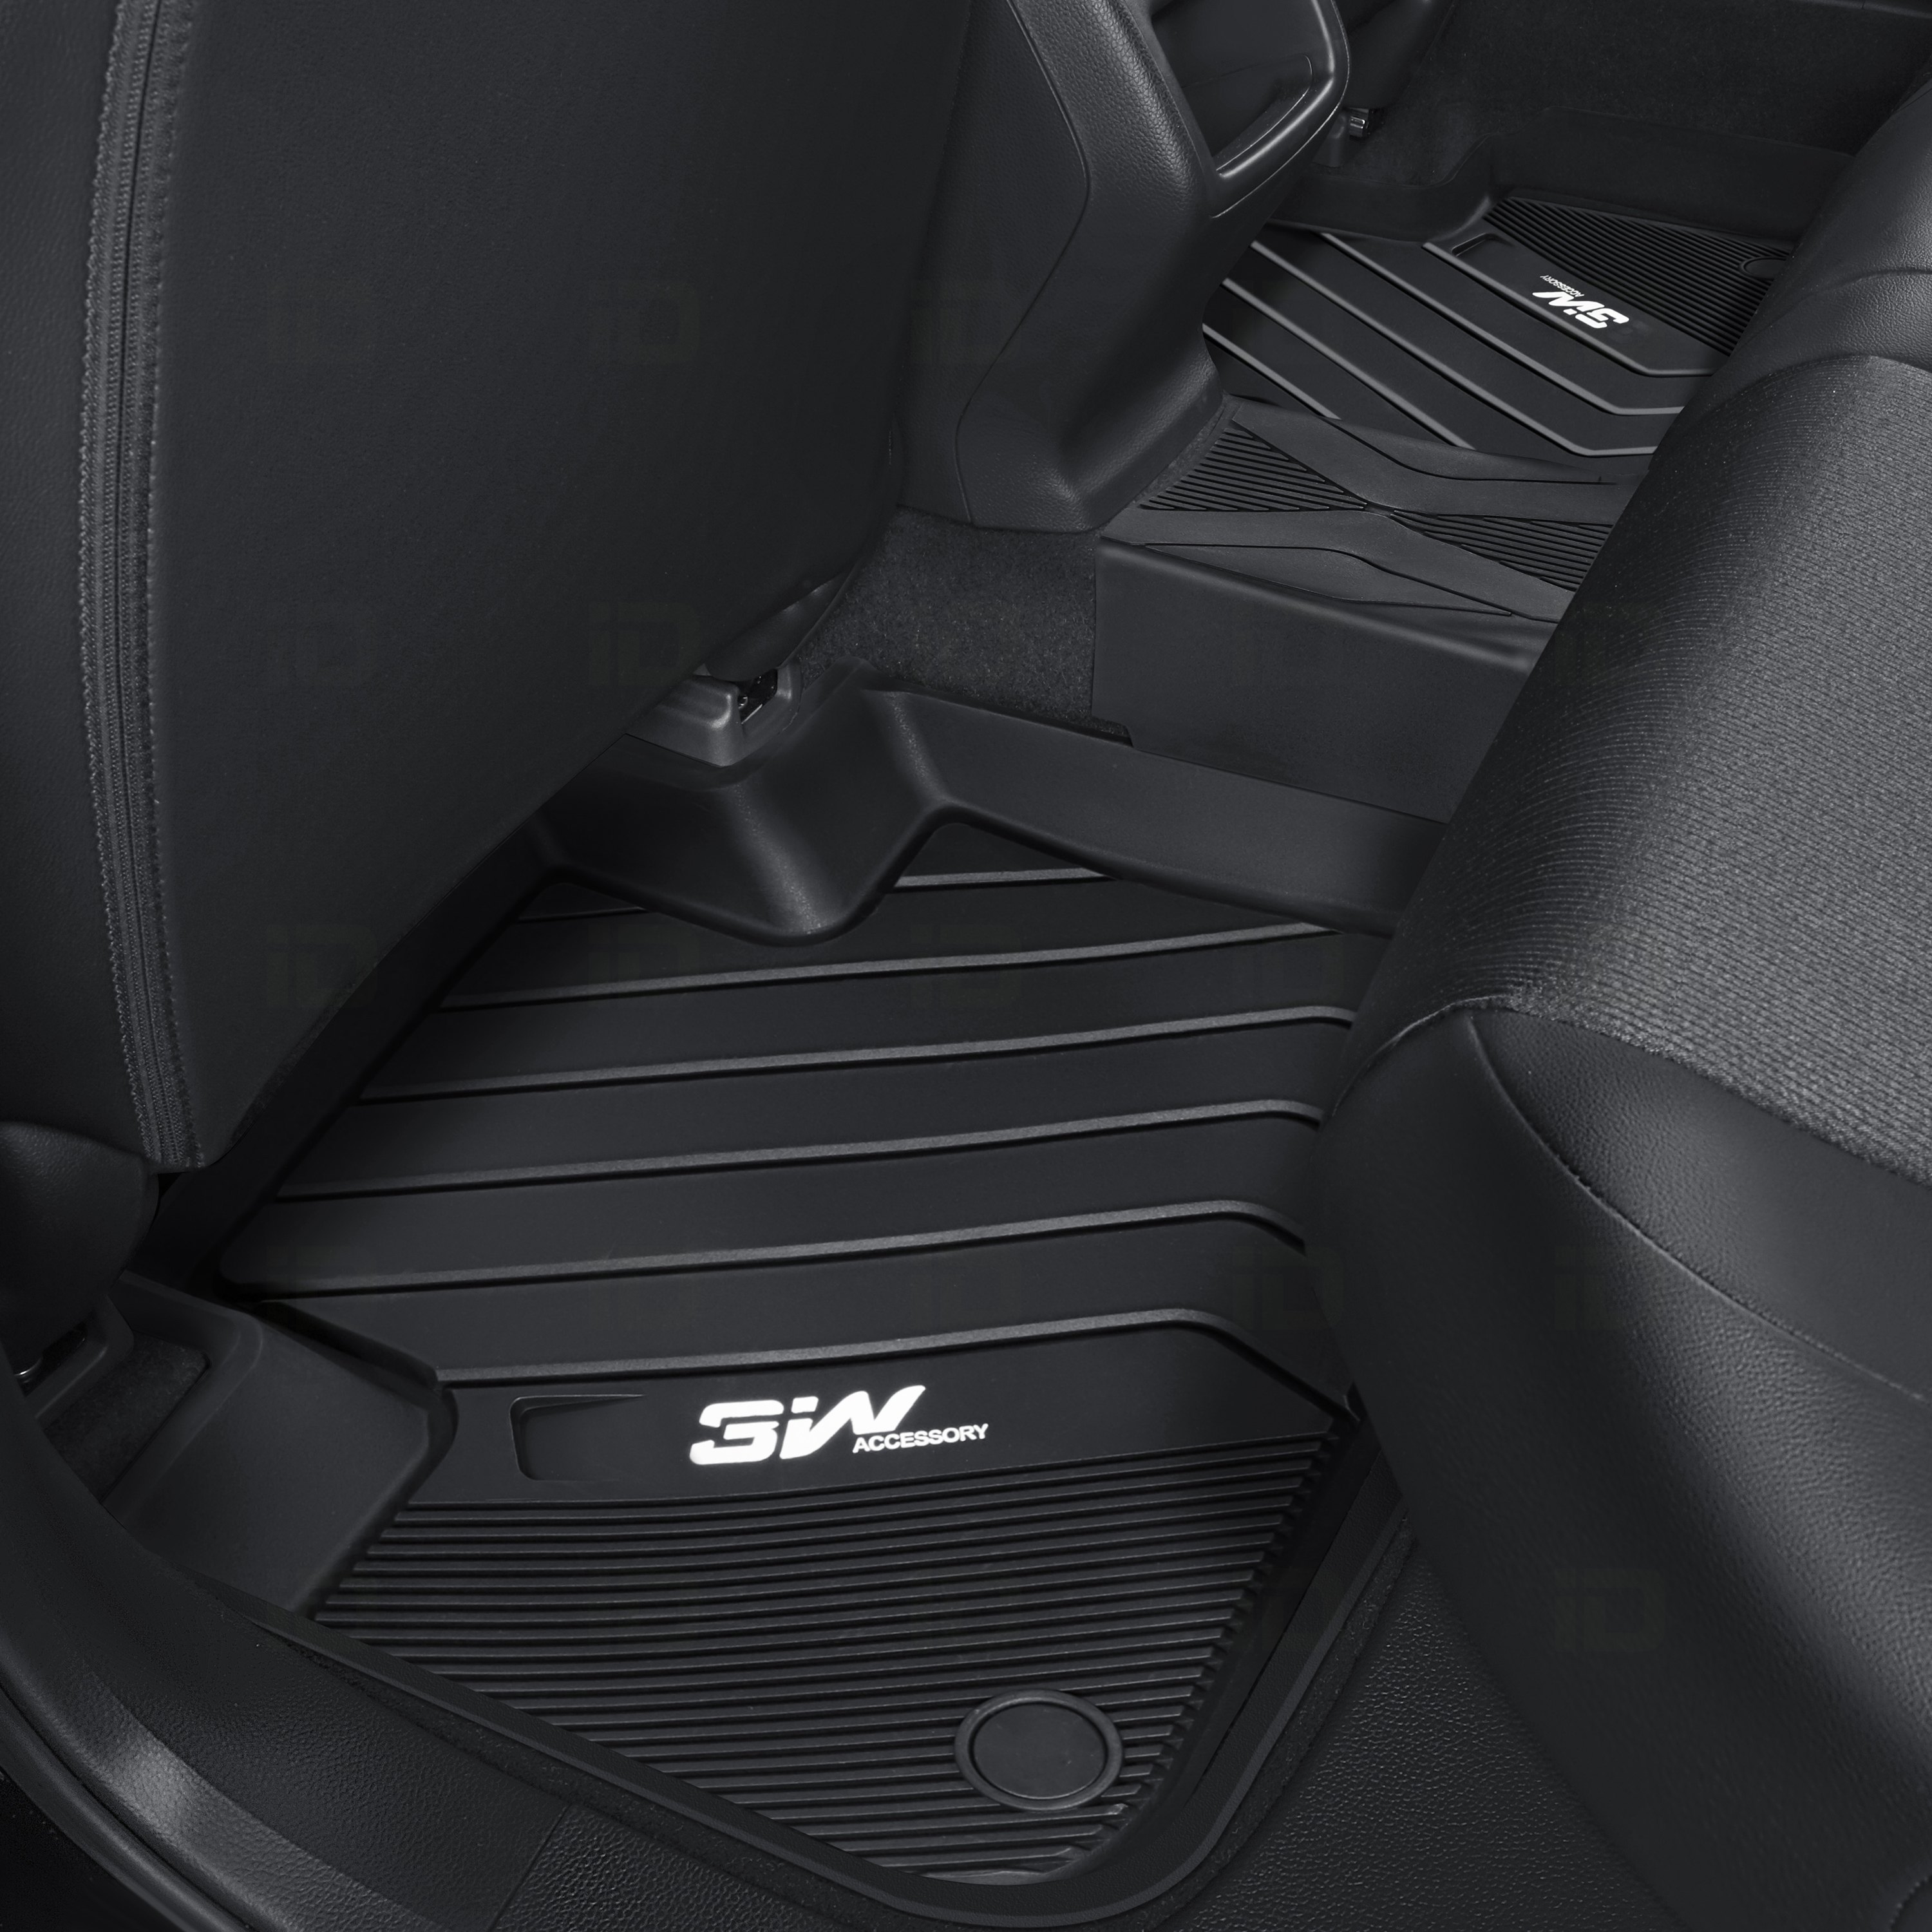 Thảm lót sàn xe ô tô dành cho BMW X3 2010 - 2018  Nhãn hiệu Macsim 3W chất liệu nhựa TPE đúc khuôn cao cấp - màu đen